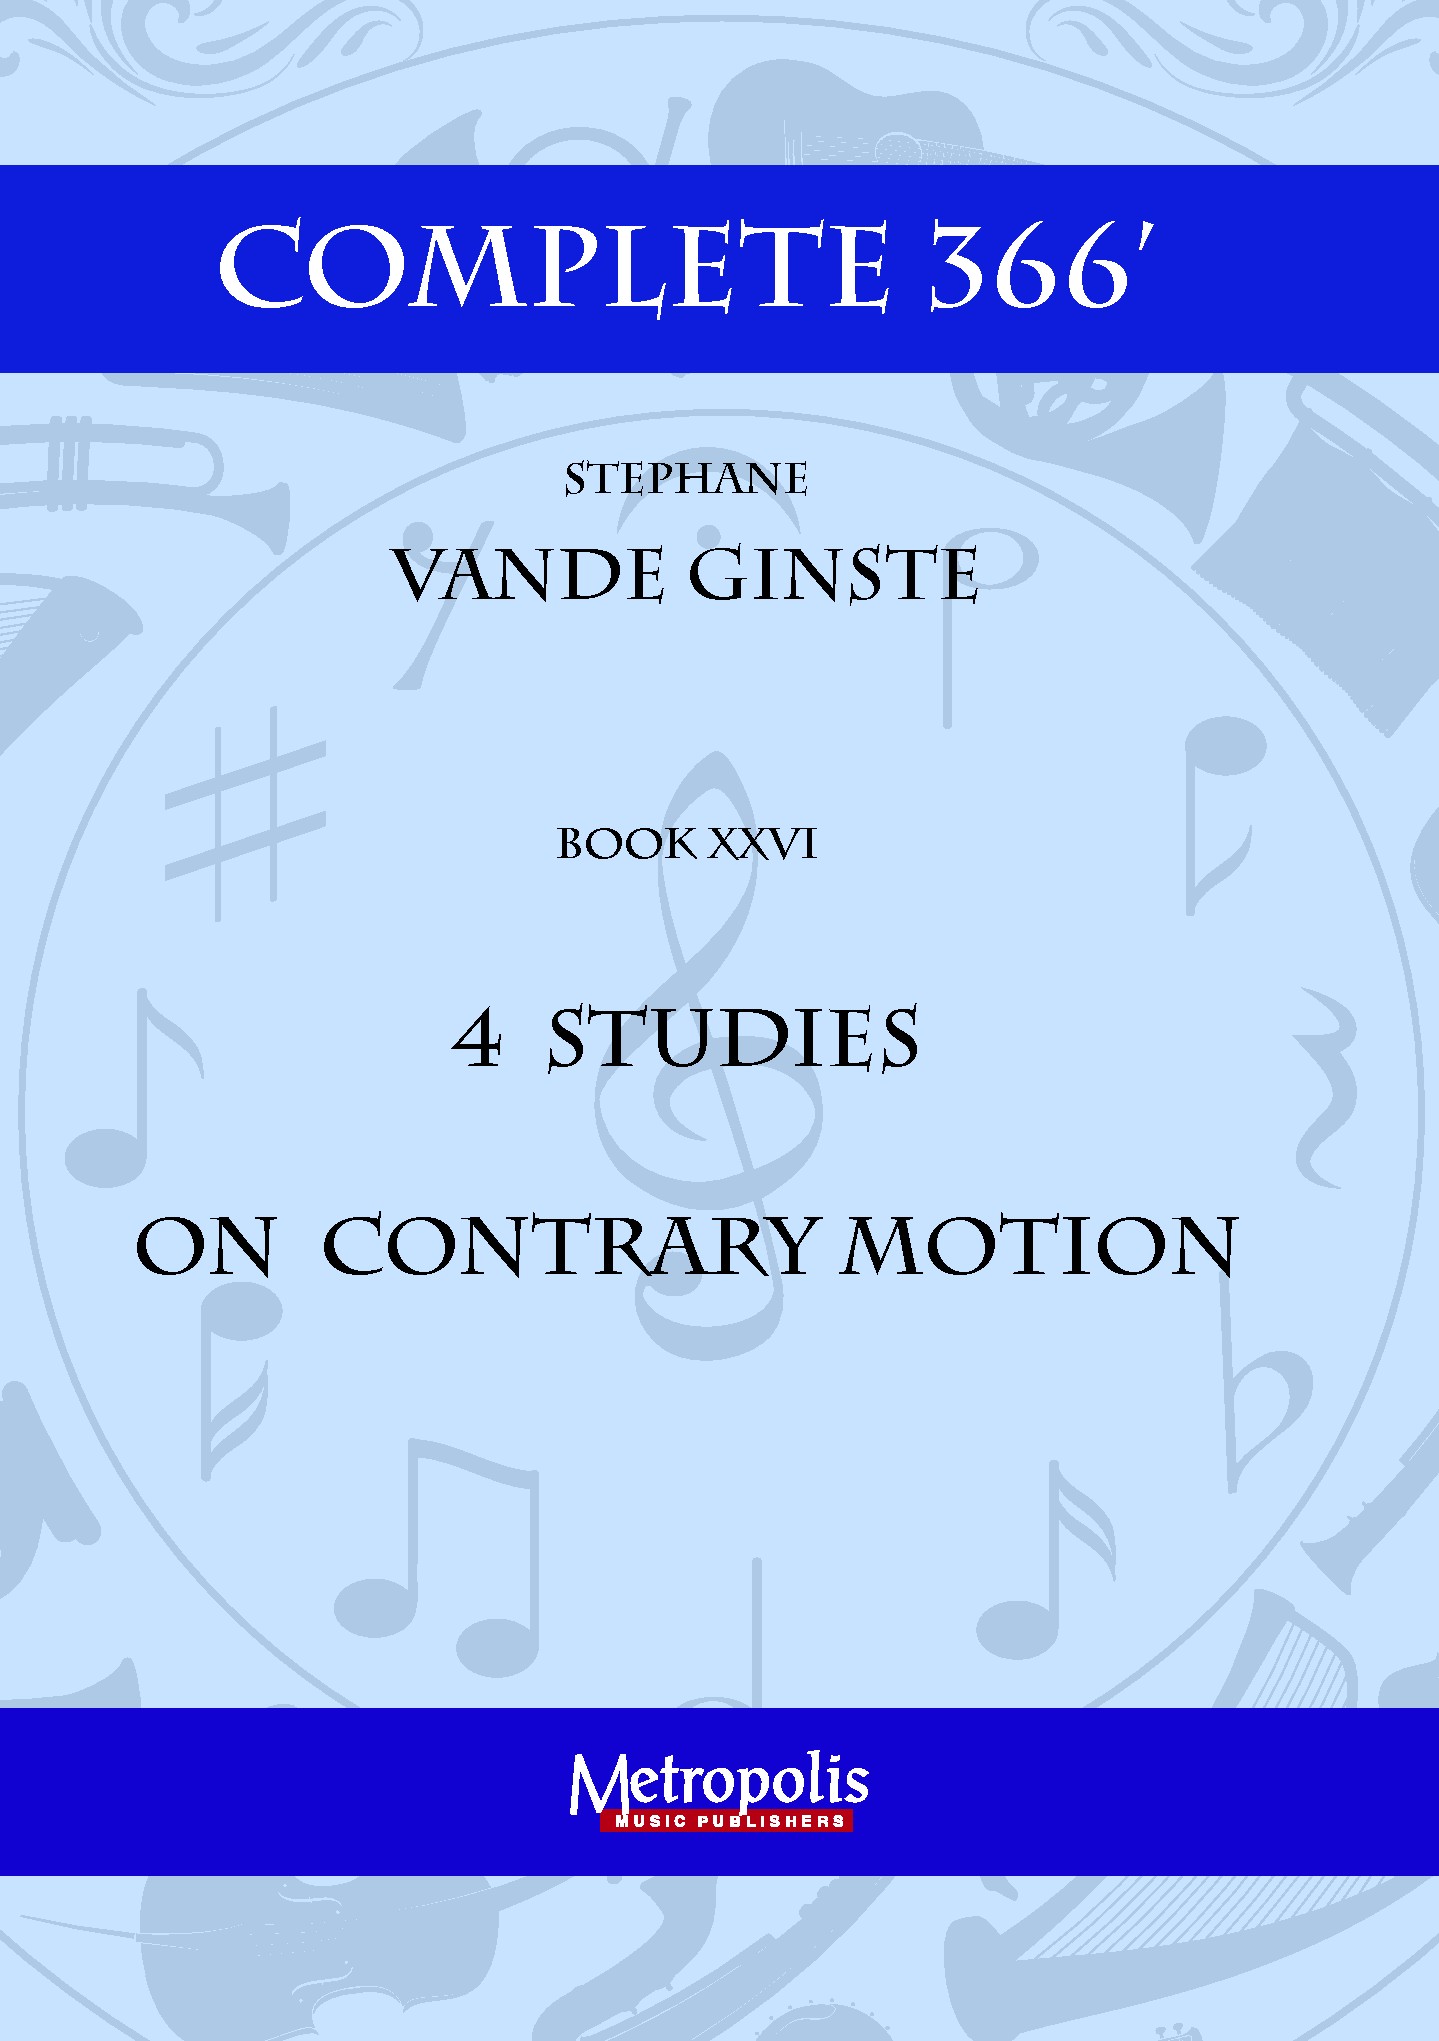 Complete 366 Book Xxvi (VANDE GINSTE STEPHANE)